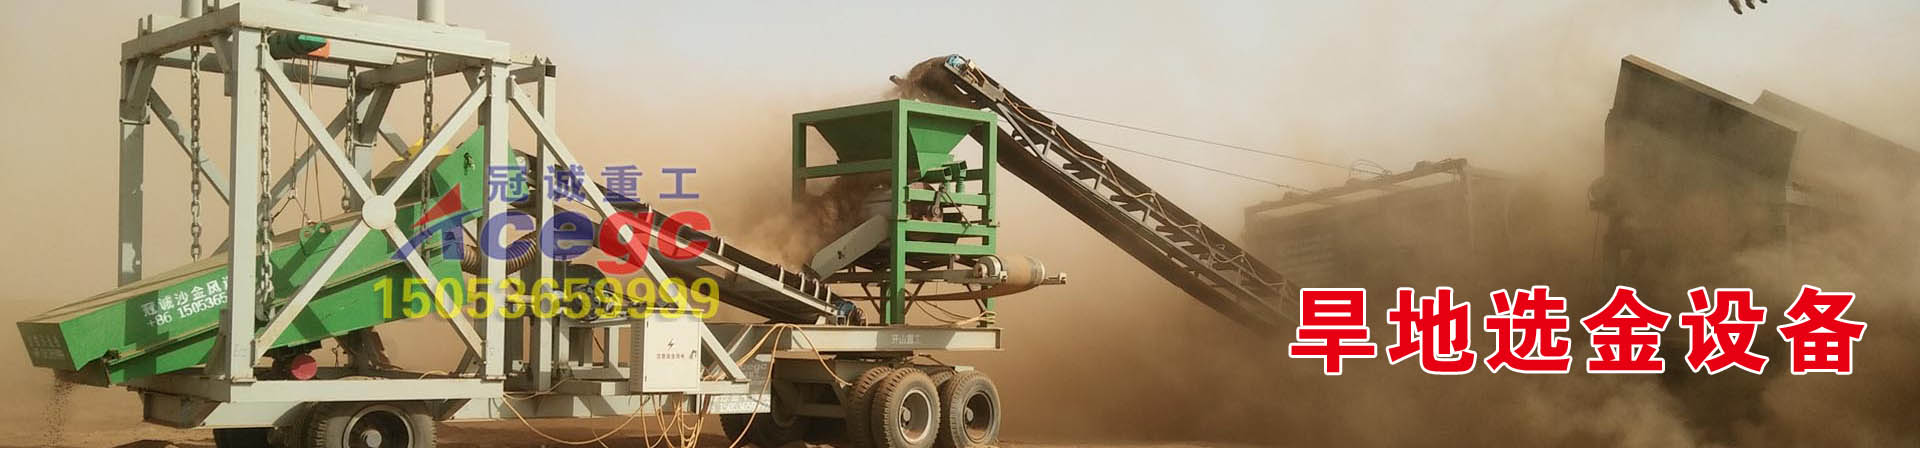 旱地选沙金机械-干选风选砂金设备